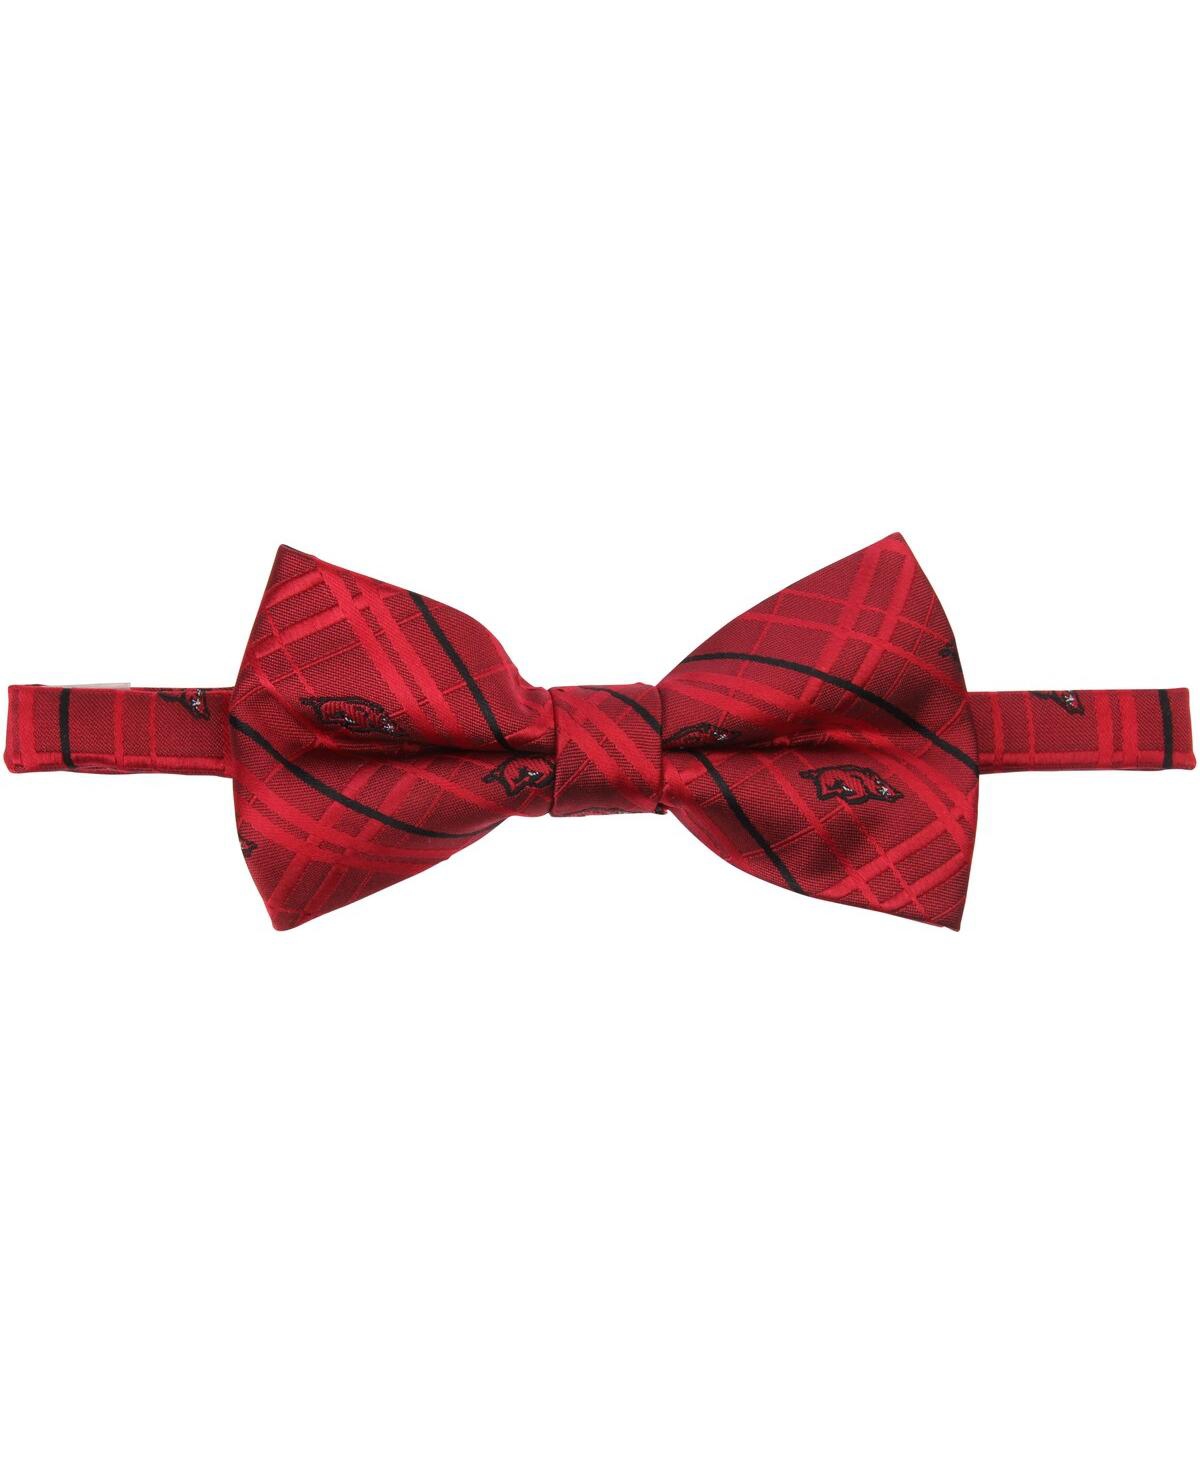 Men's Cardinal Arkansas Razorbacks Oxford Bow Tie - Red